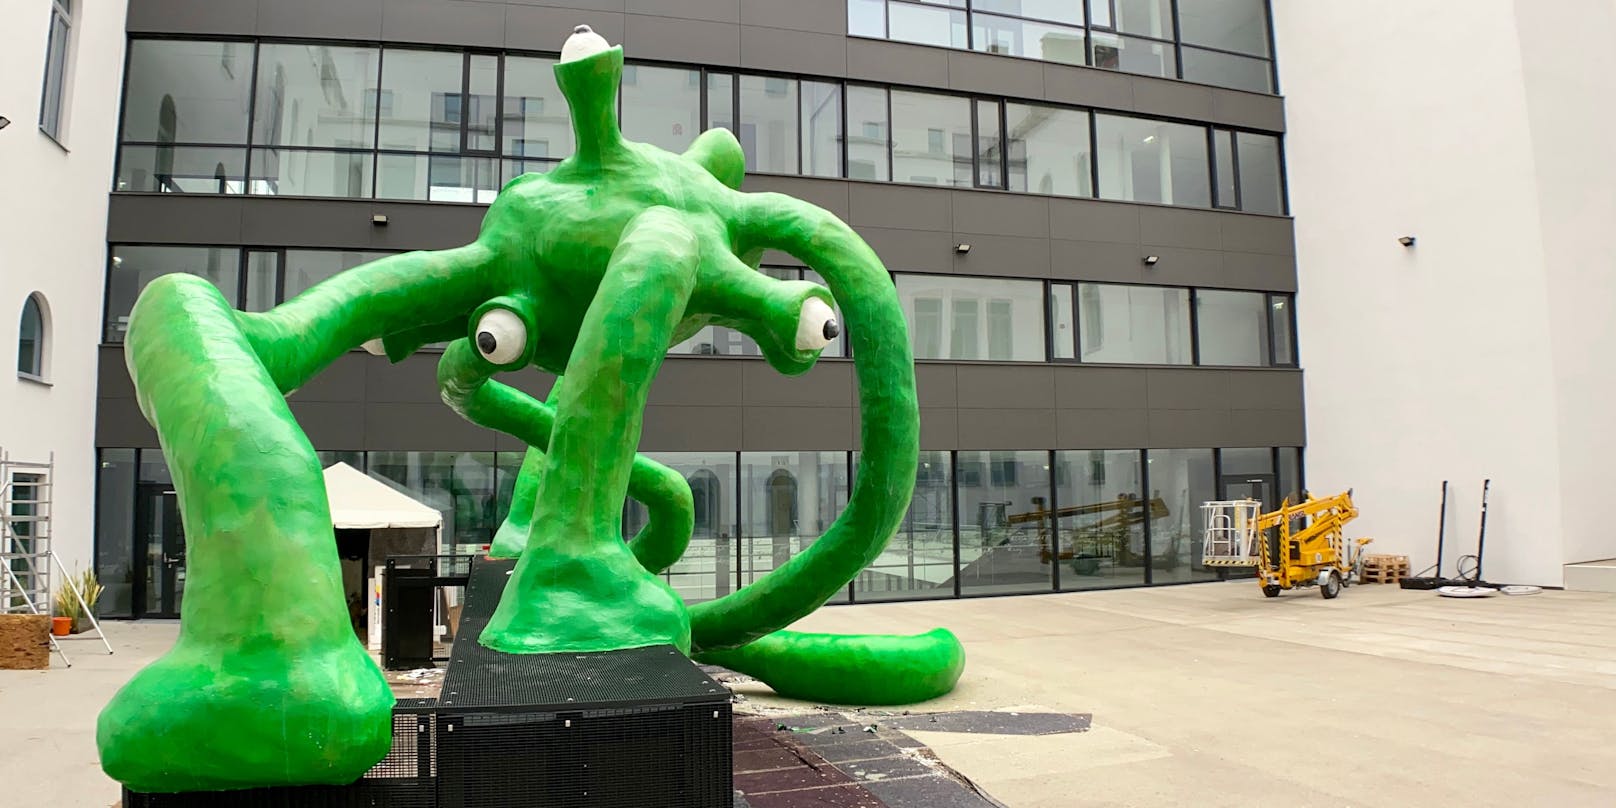 Das grüne Monster steht im Hof des Gymnasiums Lessingasse in Wien.